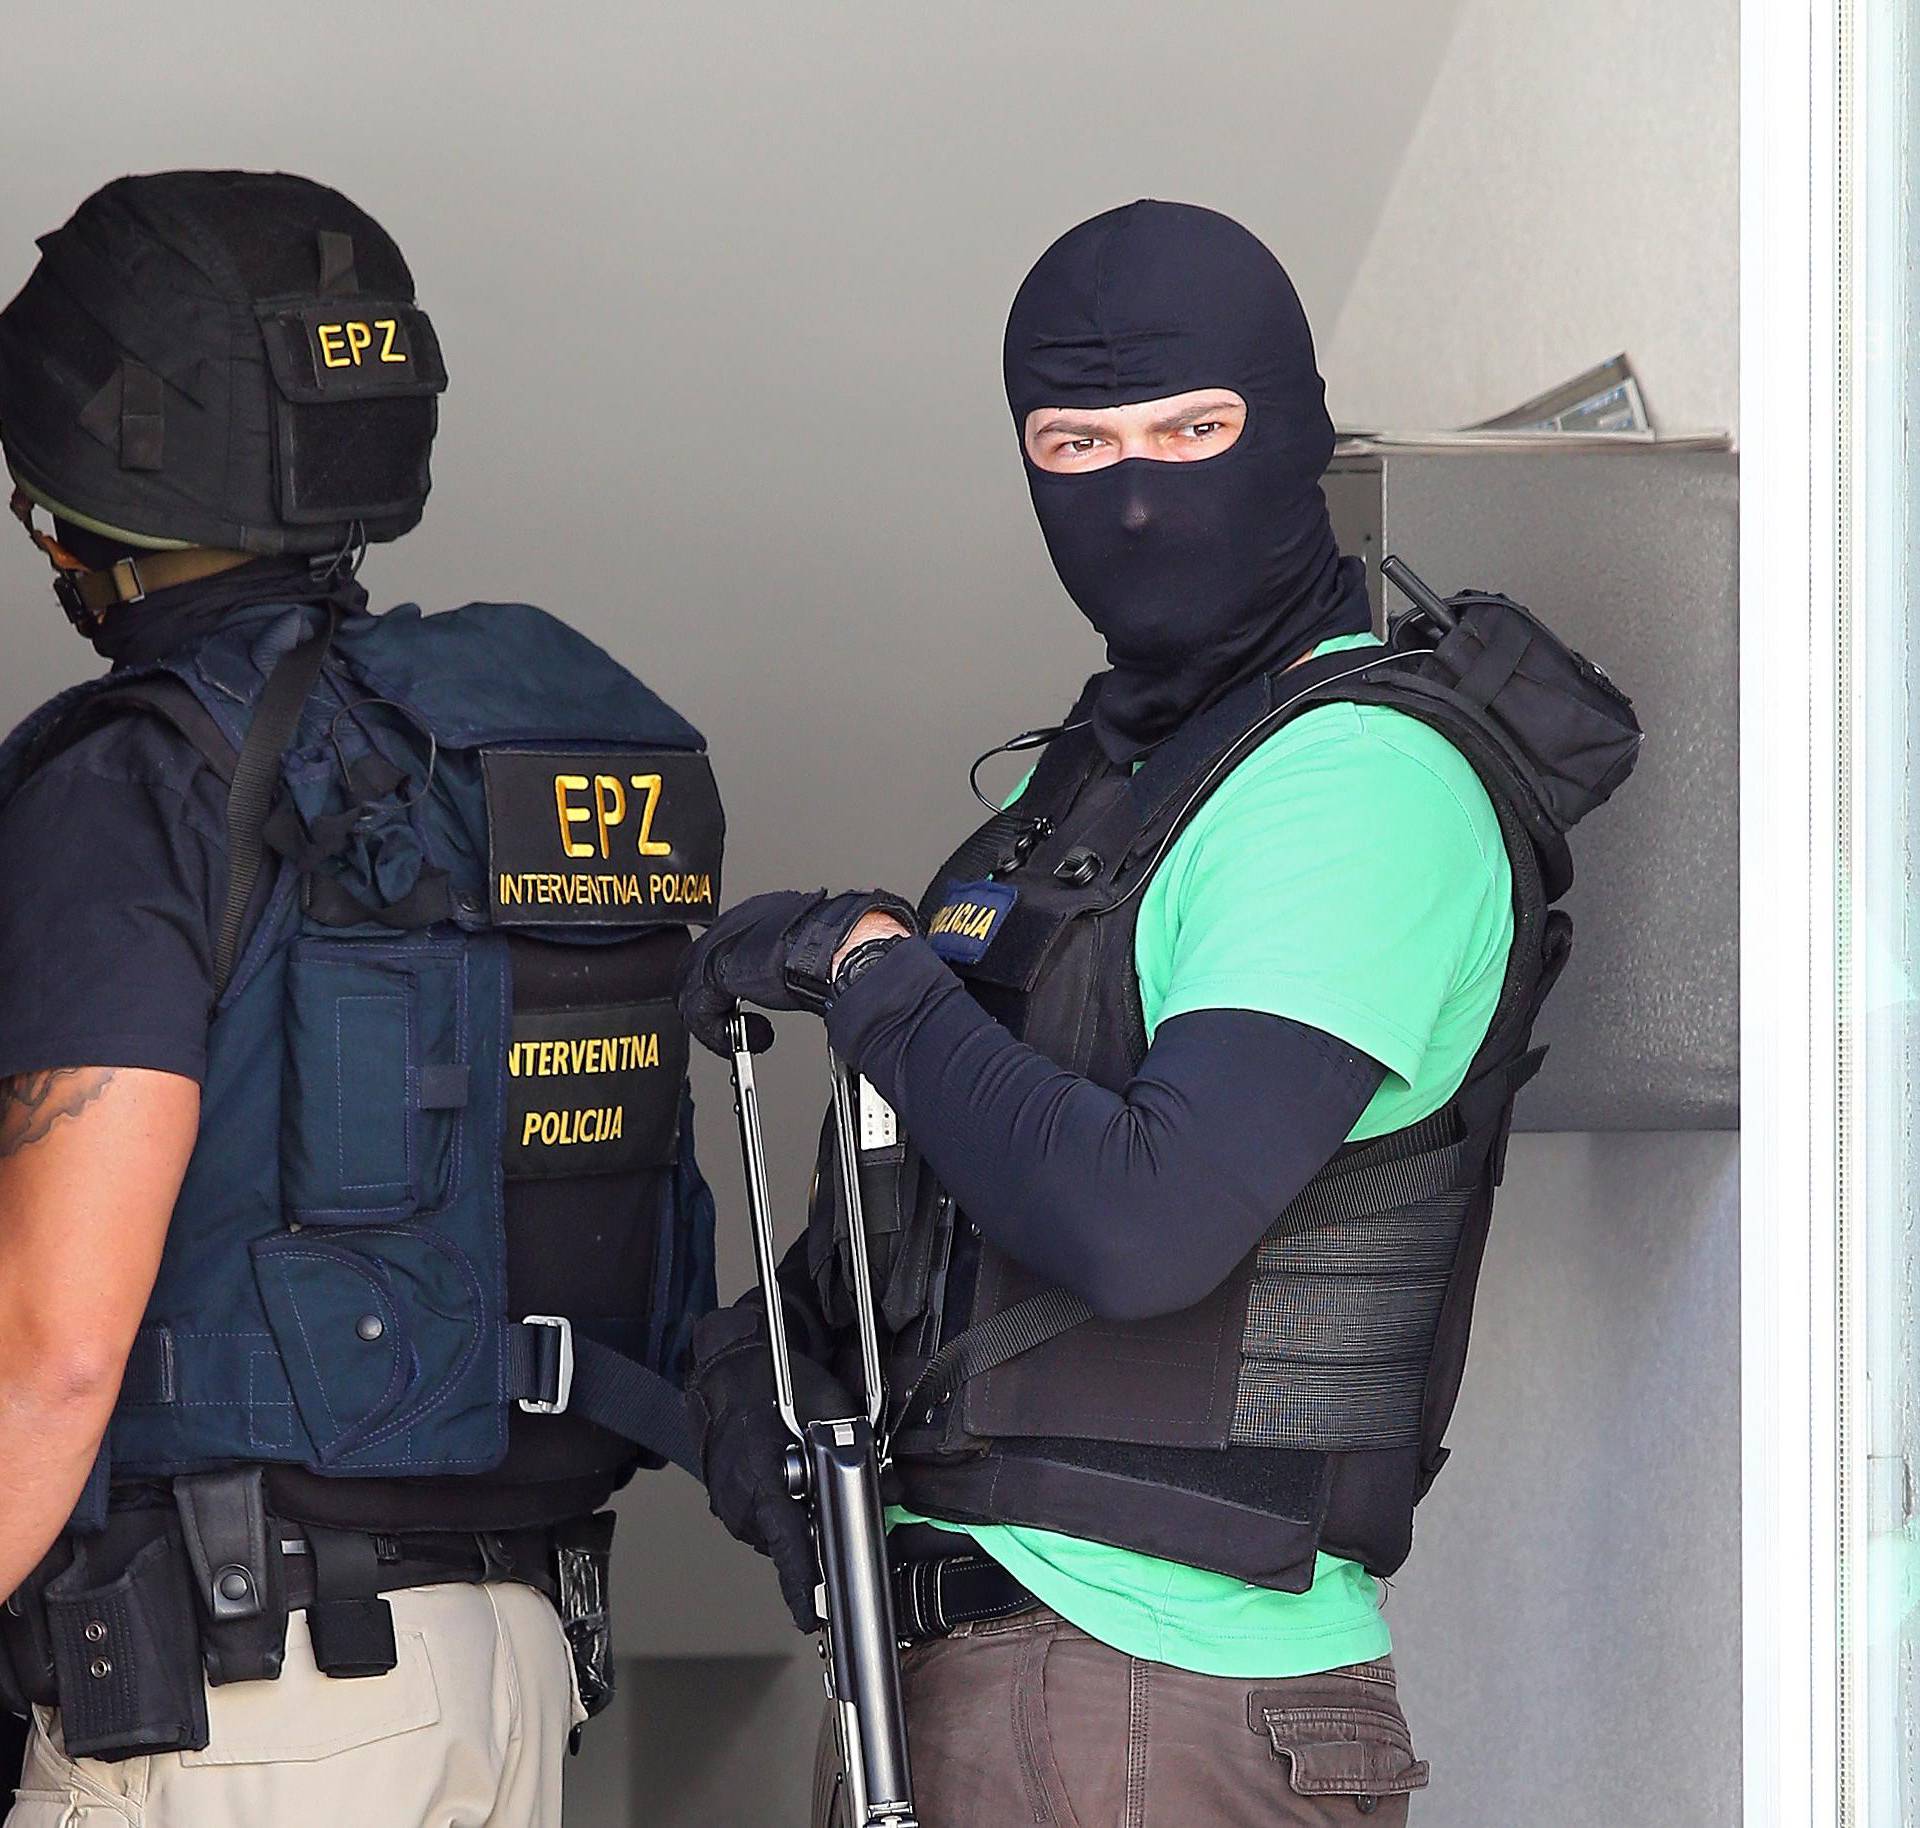 'Dići ću sve u zrak!': Uhitili su muškarca koji se skrivao u Odri